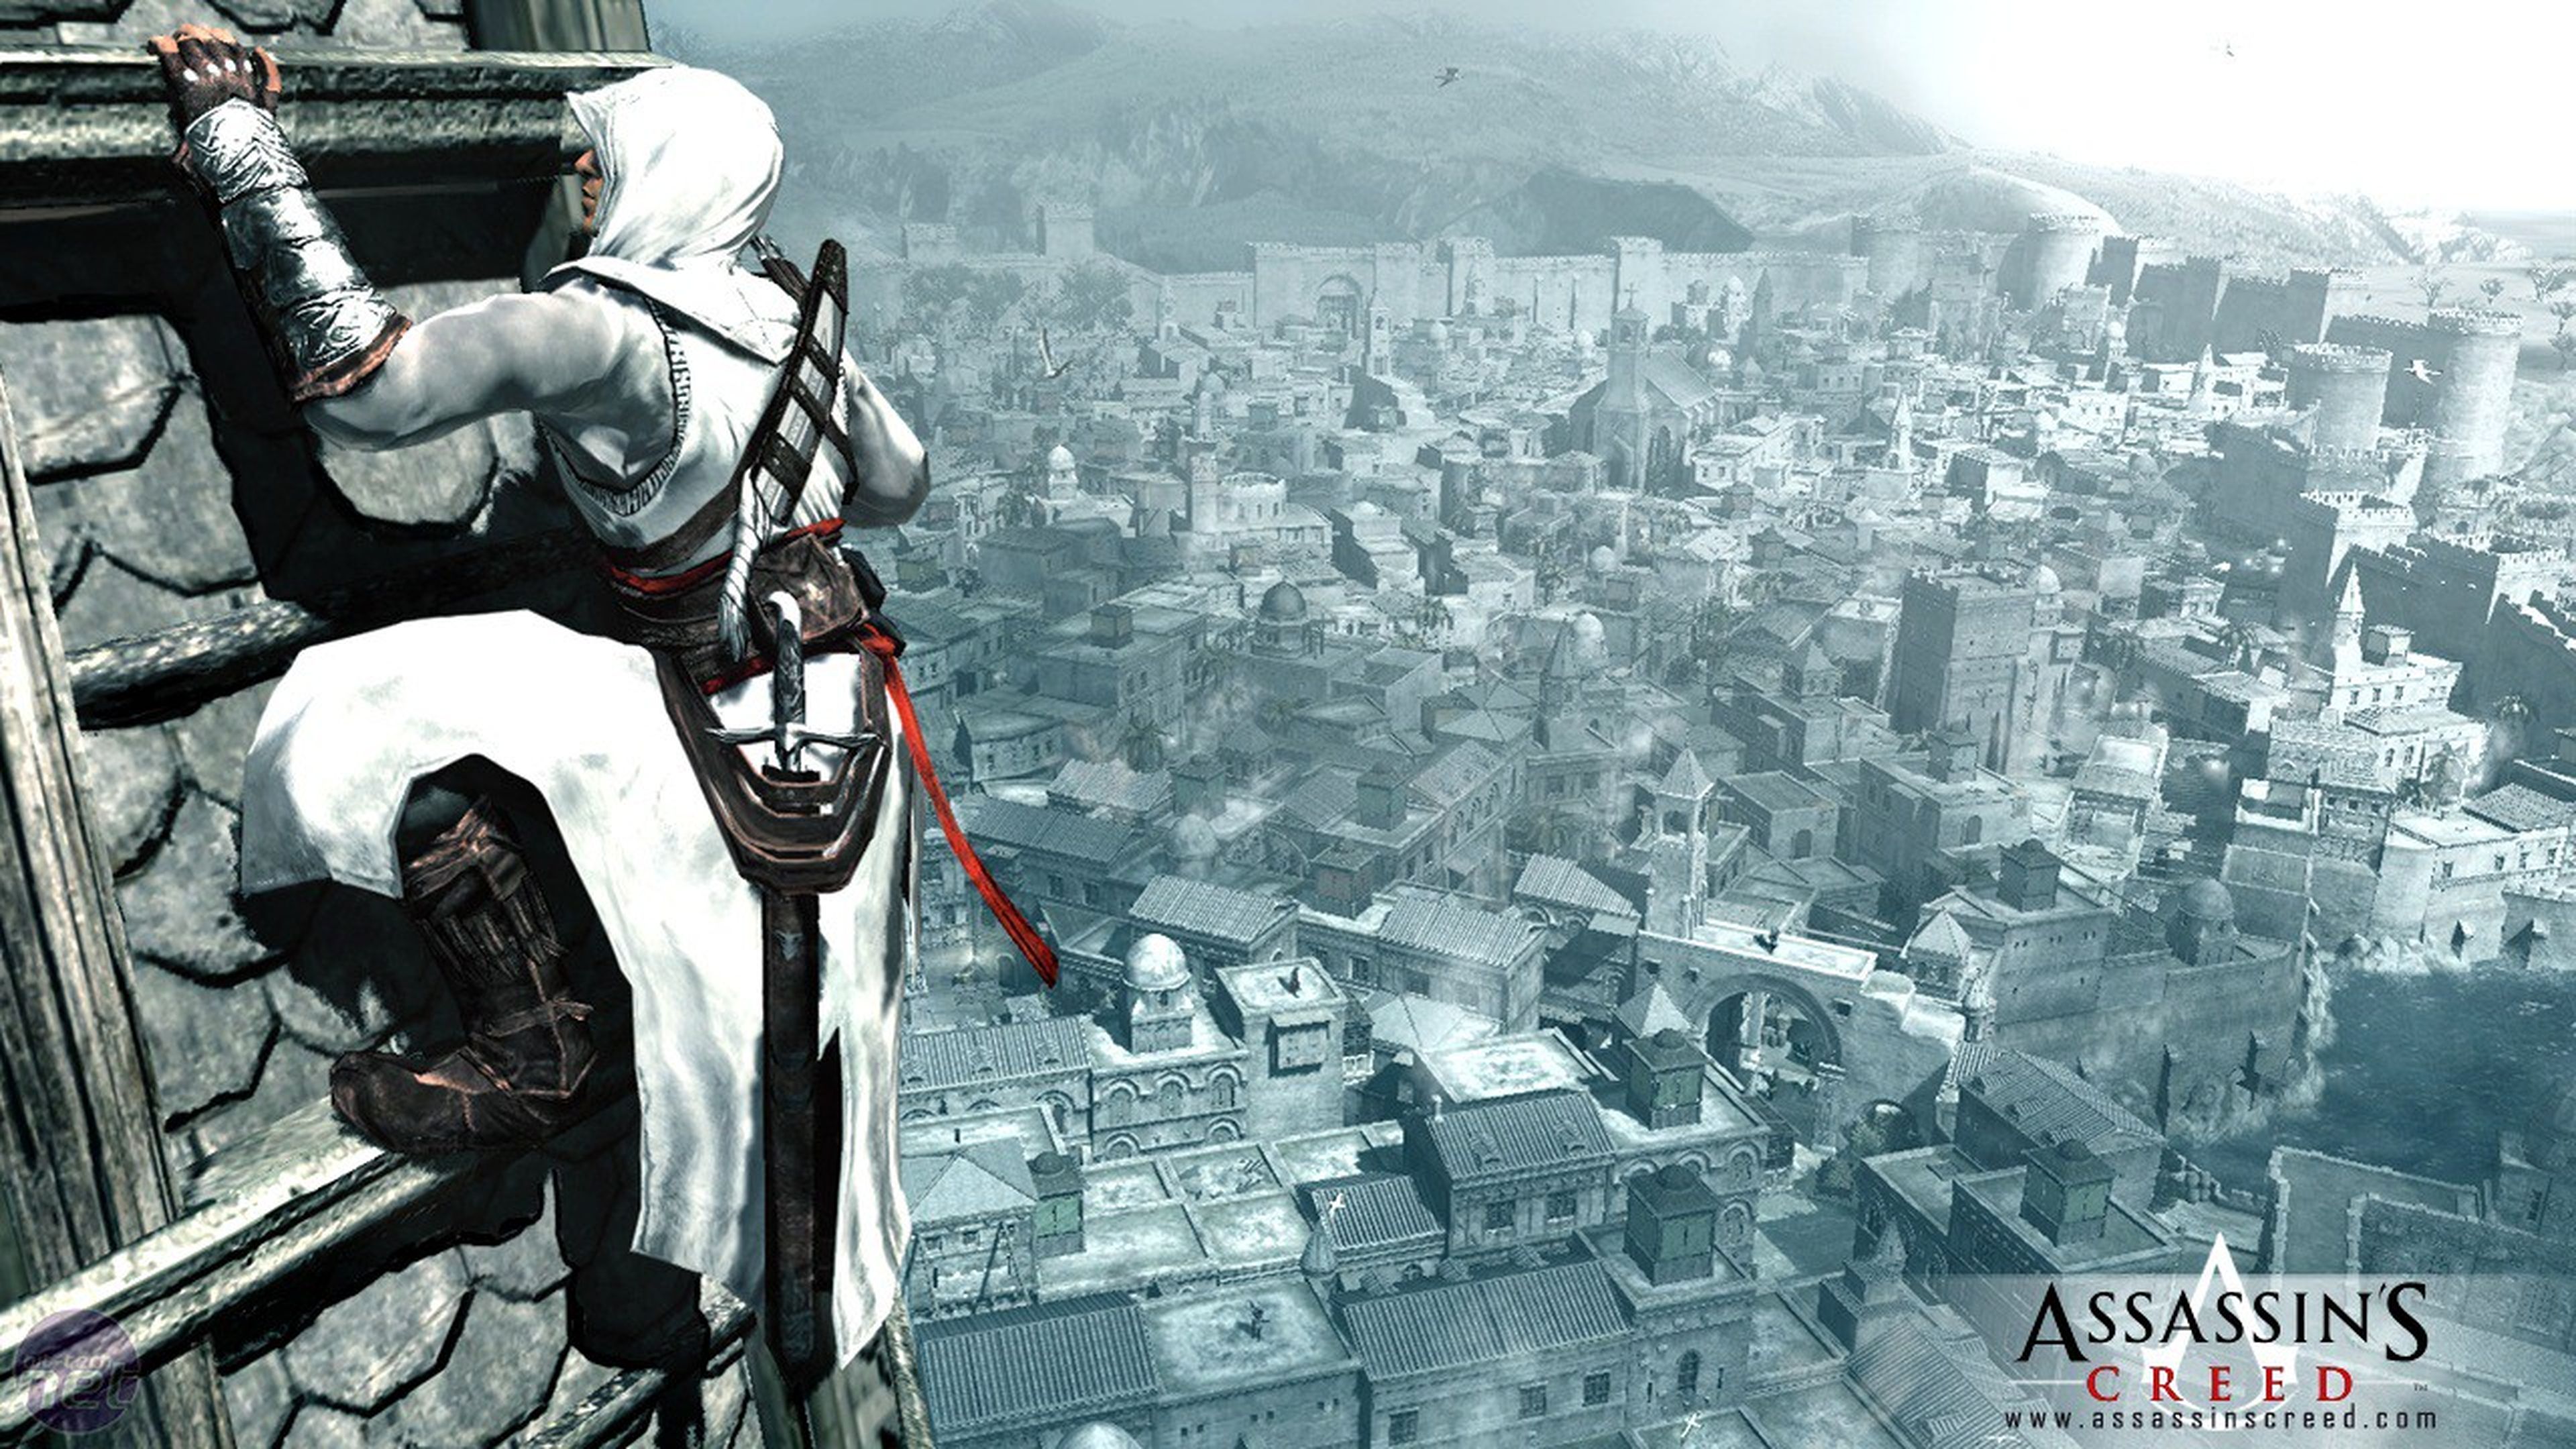 Pronto sabremos más del nuevo Assassin's Creed de PlayStation 3 y Xbox 360